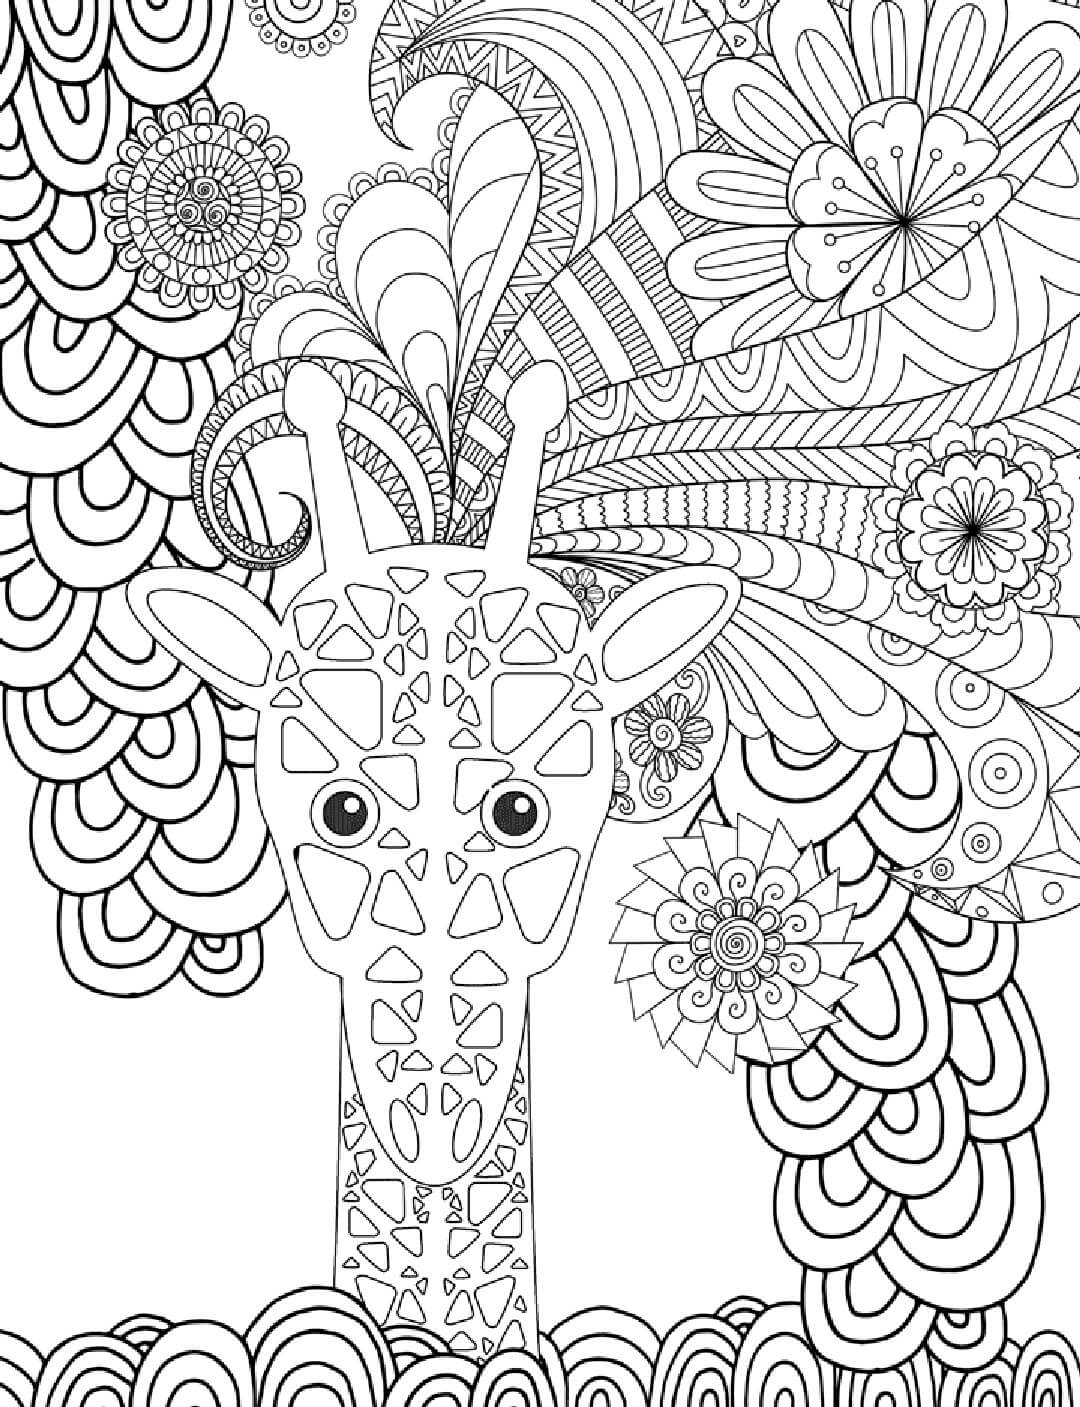 Mandala Giraffe Coloring Page - Sheet 9 Mandalas